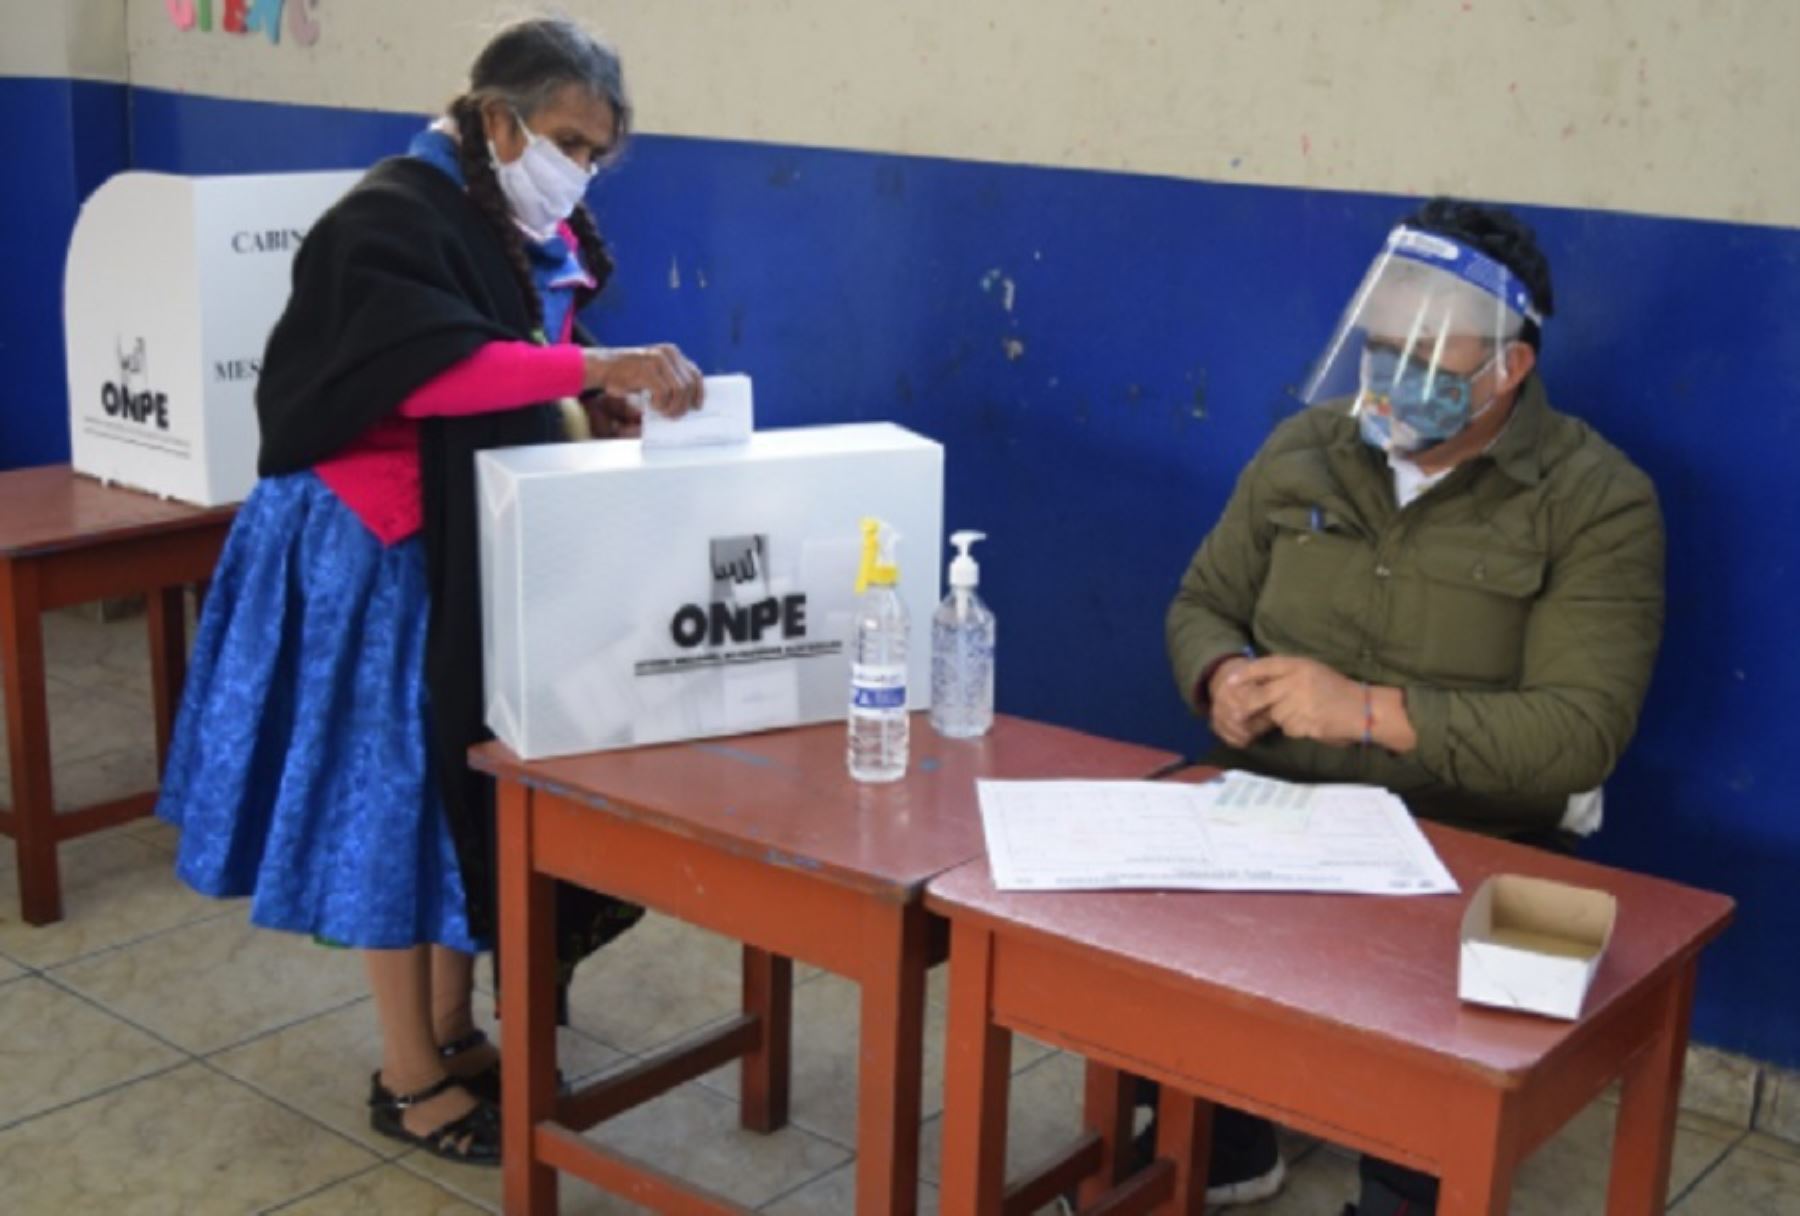 La Oficina Descentralizada de Procesos Electorales (ODPE) de Sánchez Carrión informó que se logró instalar el 100% de las mesas de votación antes de las 11:00 horas, por lo que el proceso se realiza sin mayor contratiempo.